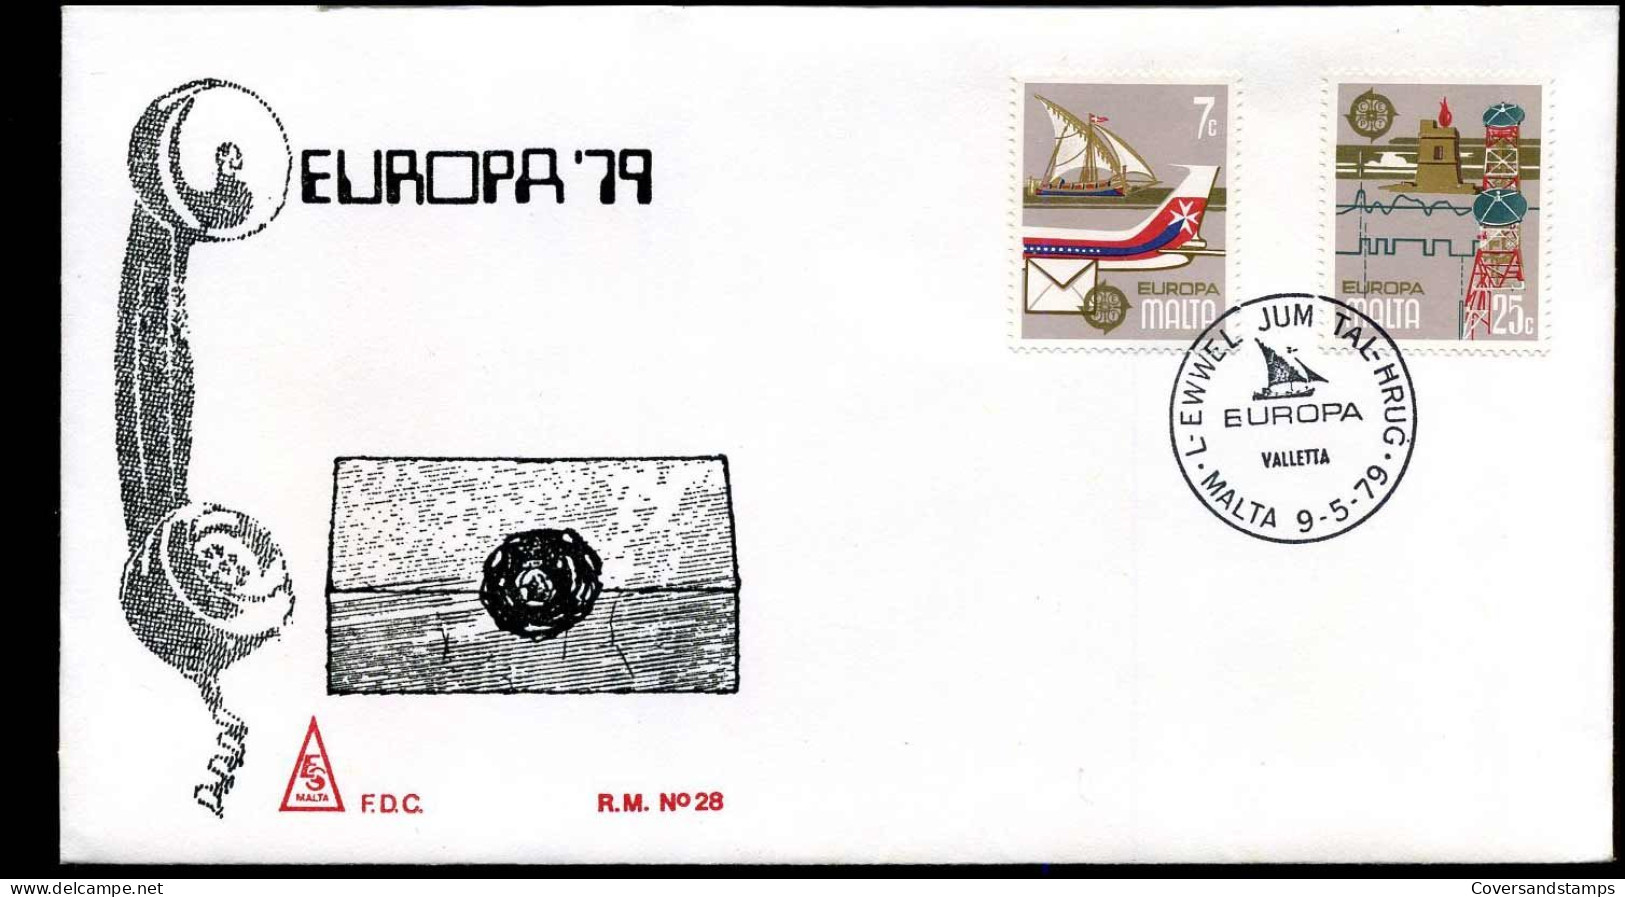 Malta  - FDC - Europa CEPT 1979 - 1979